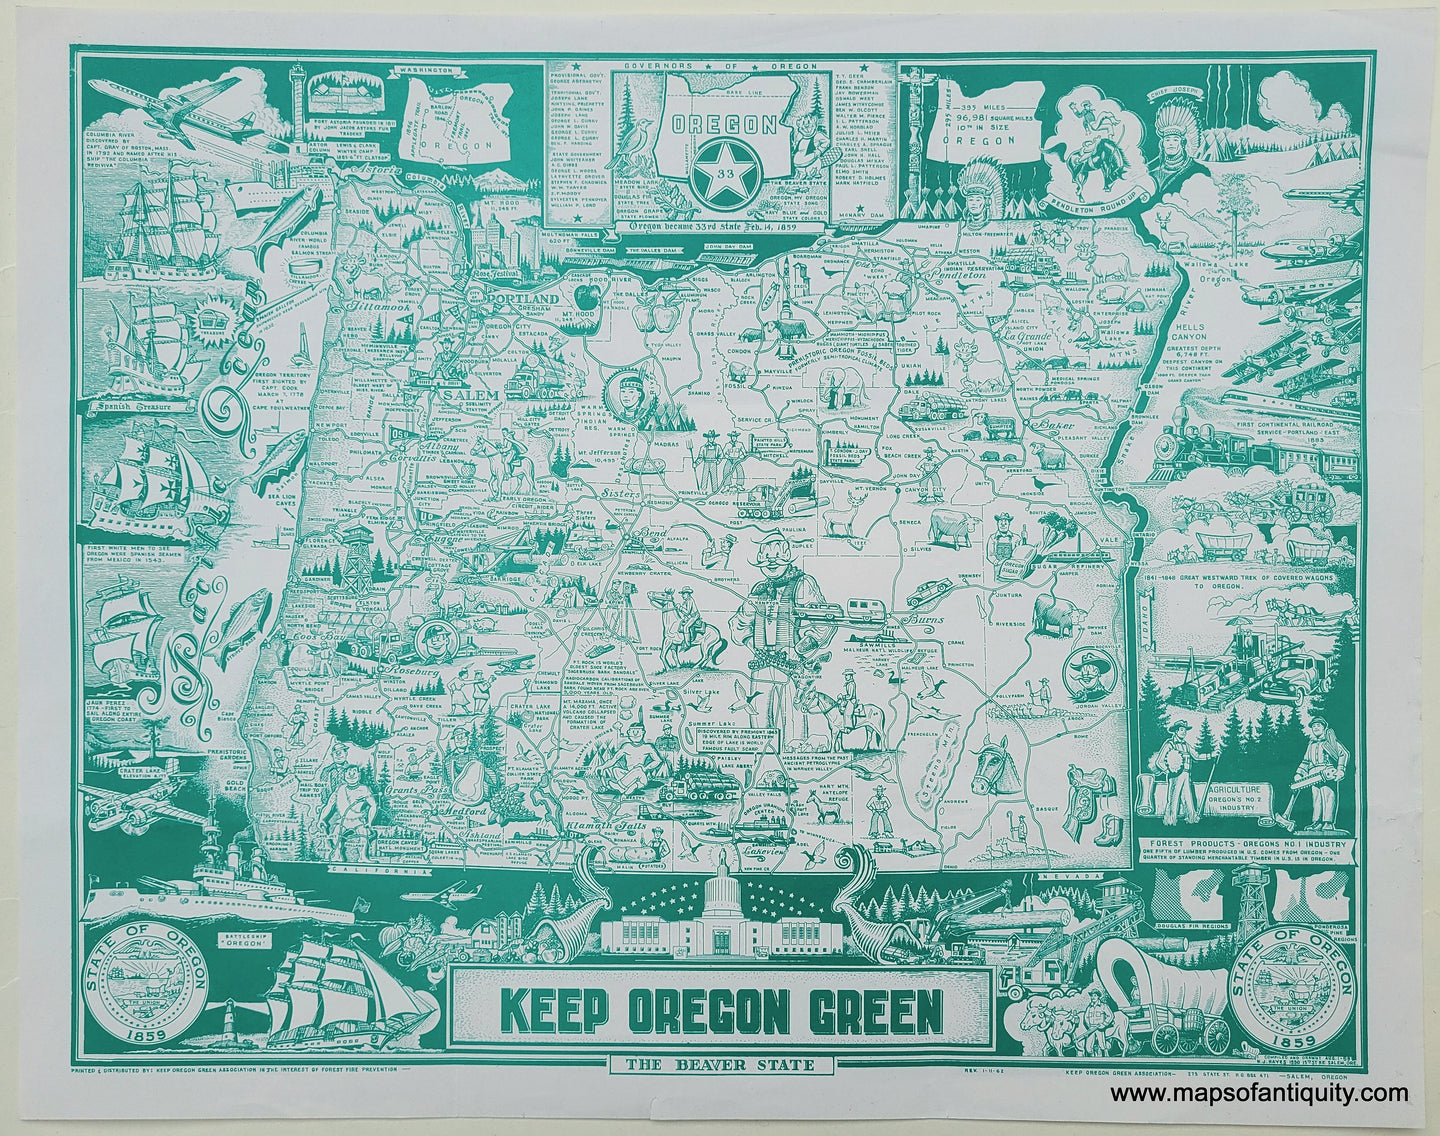 Genuine-Vintage-Map-Keep-Oregon-Green-1962-N-J-Hayes-Maps-Of-Antiquity